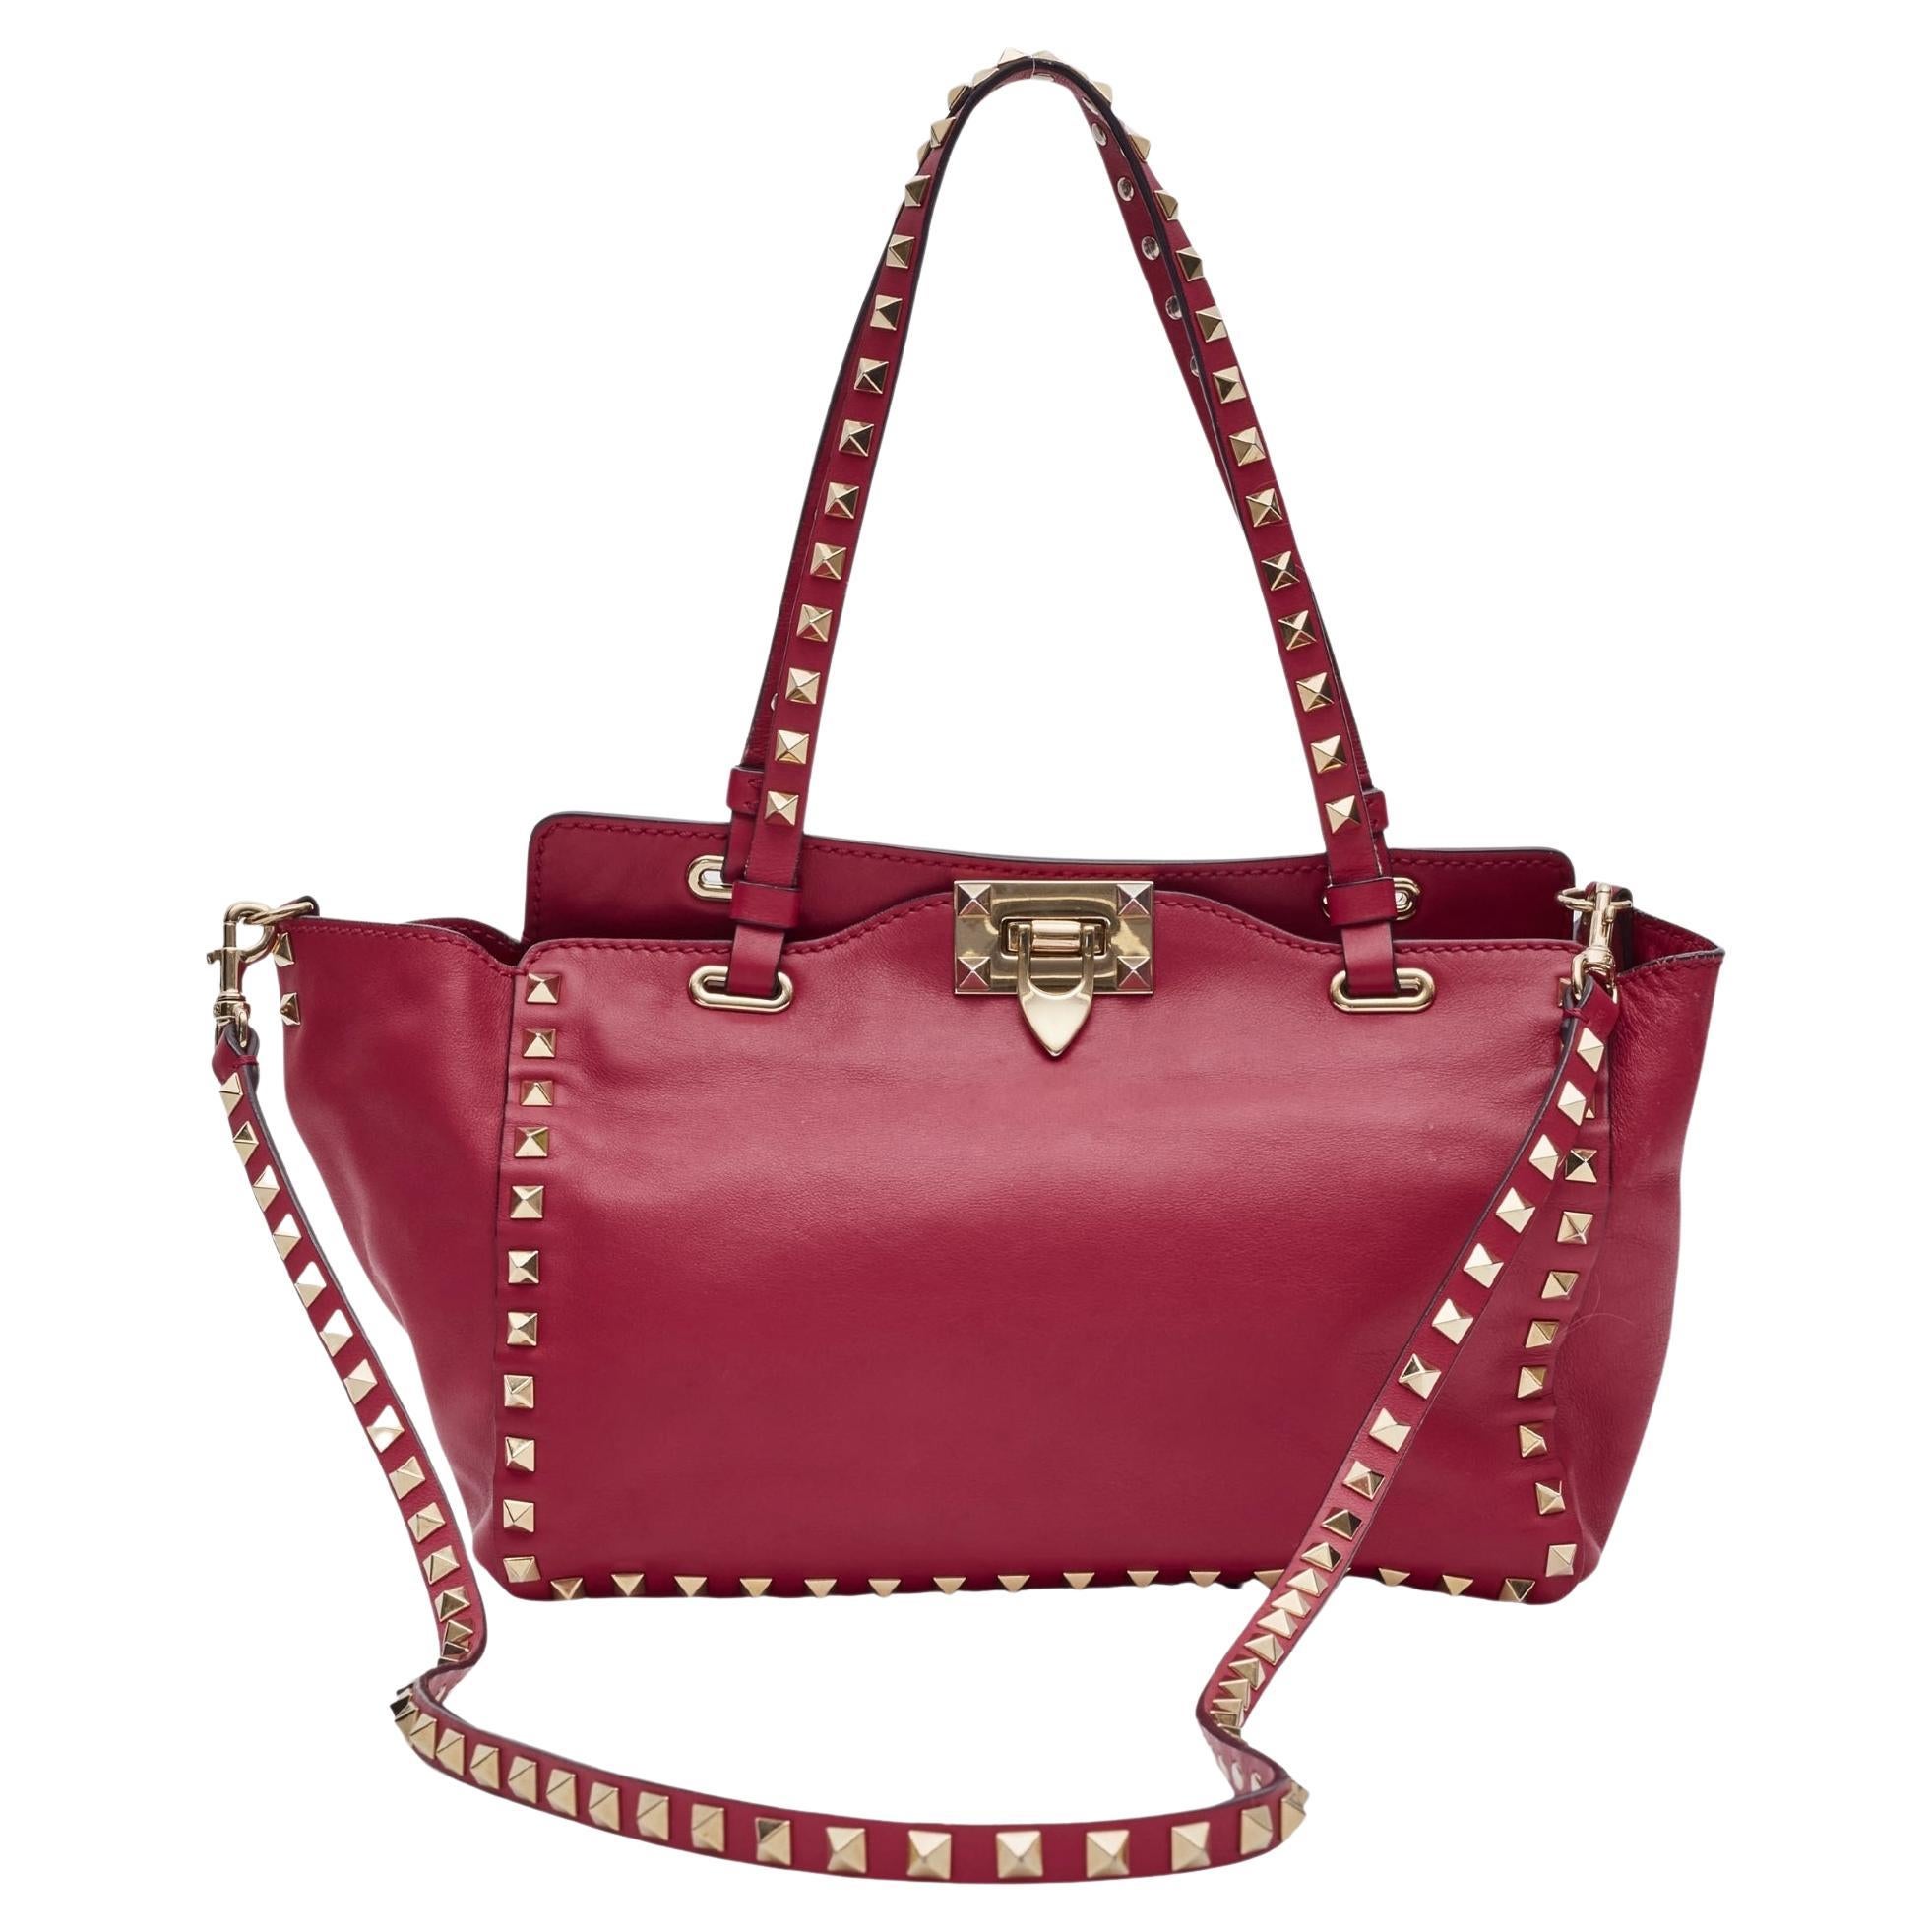 Valentino Garavani Red Leather Rockstud Shoulder Bag